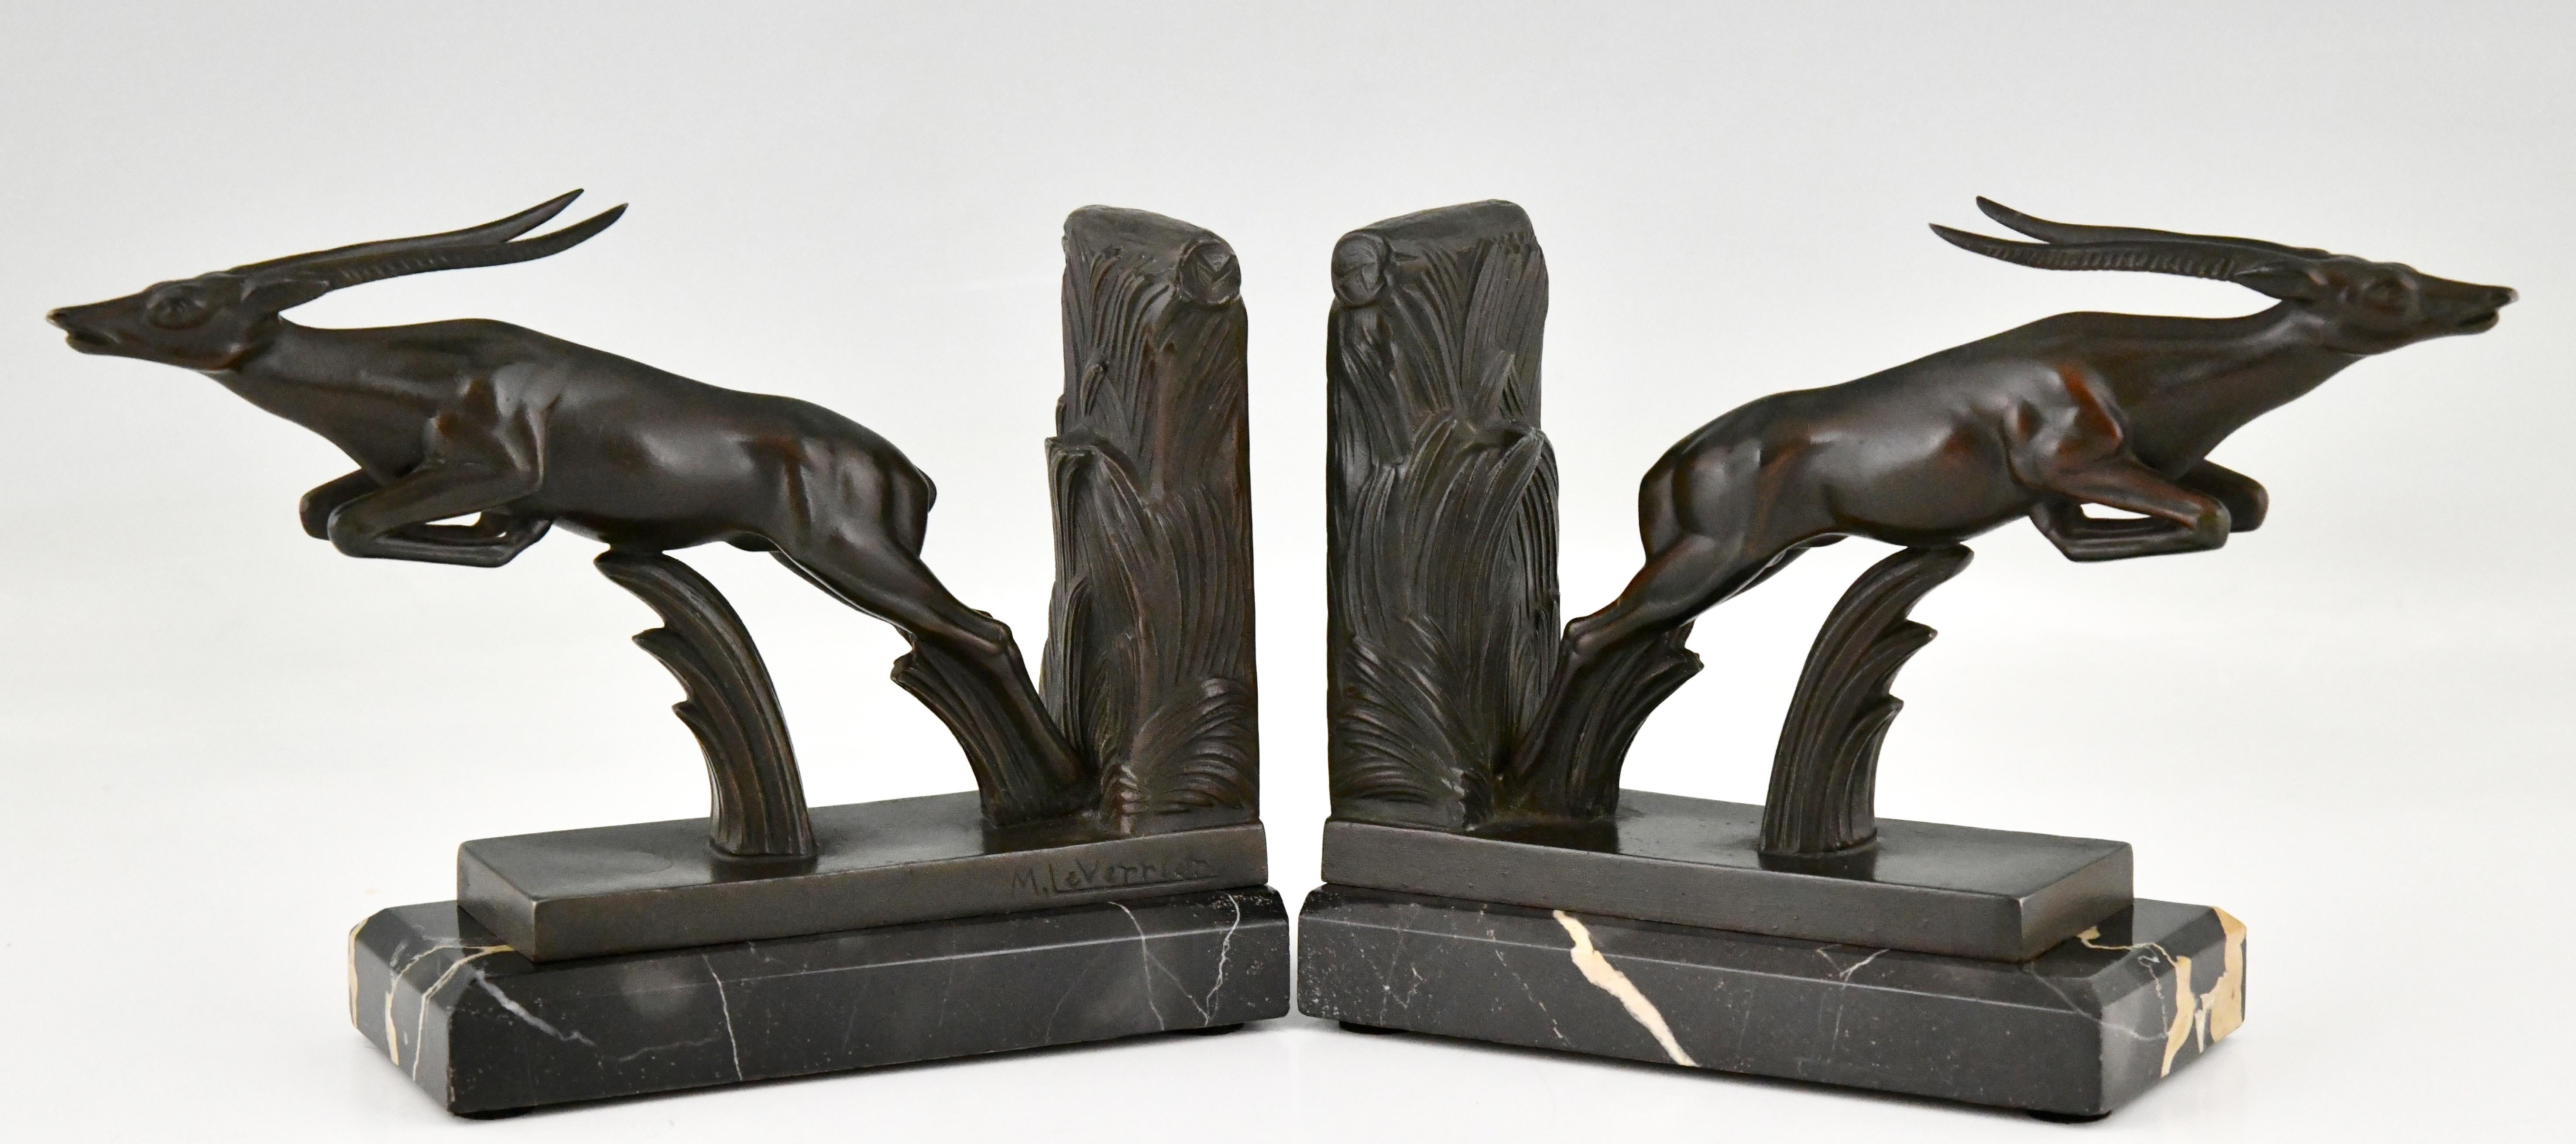 Art-Deco-Buchstützen mit springenden Hirschen von Max Le Verrier. 
Die Skulpturen sind aus patiniertem Metall gefertigt und auf Sockeln aus Portor-Marmor montiert. 
Frankreich 1930.